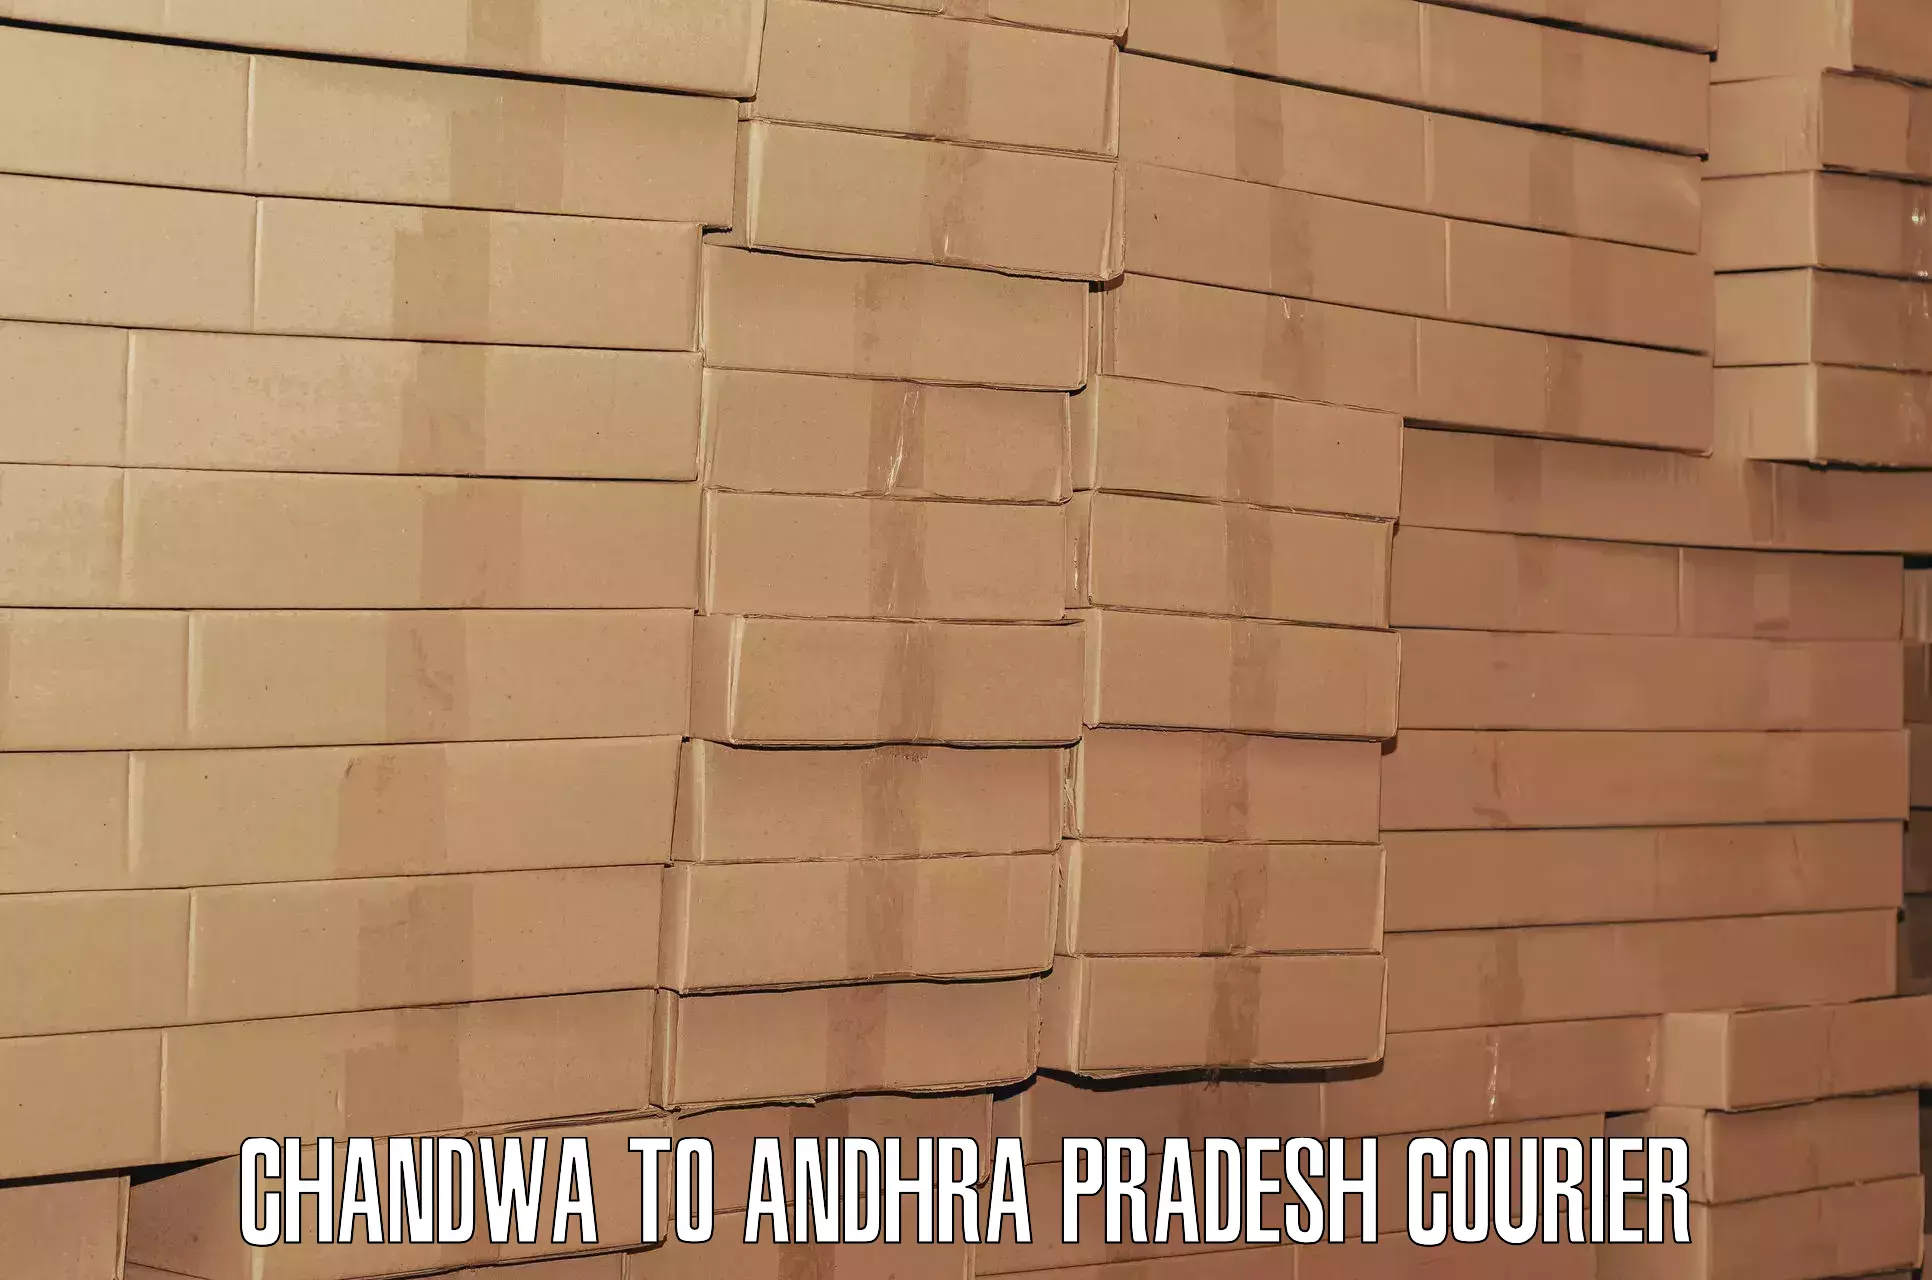 Door-to-door baggage service Chandwa to Andhra Pradesh